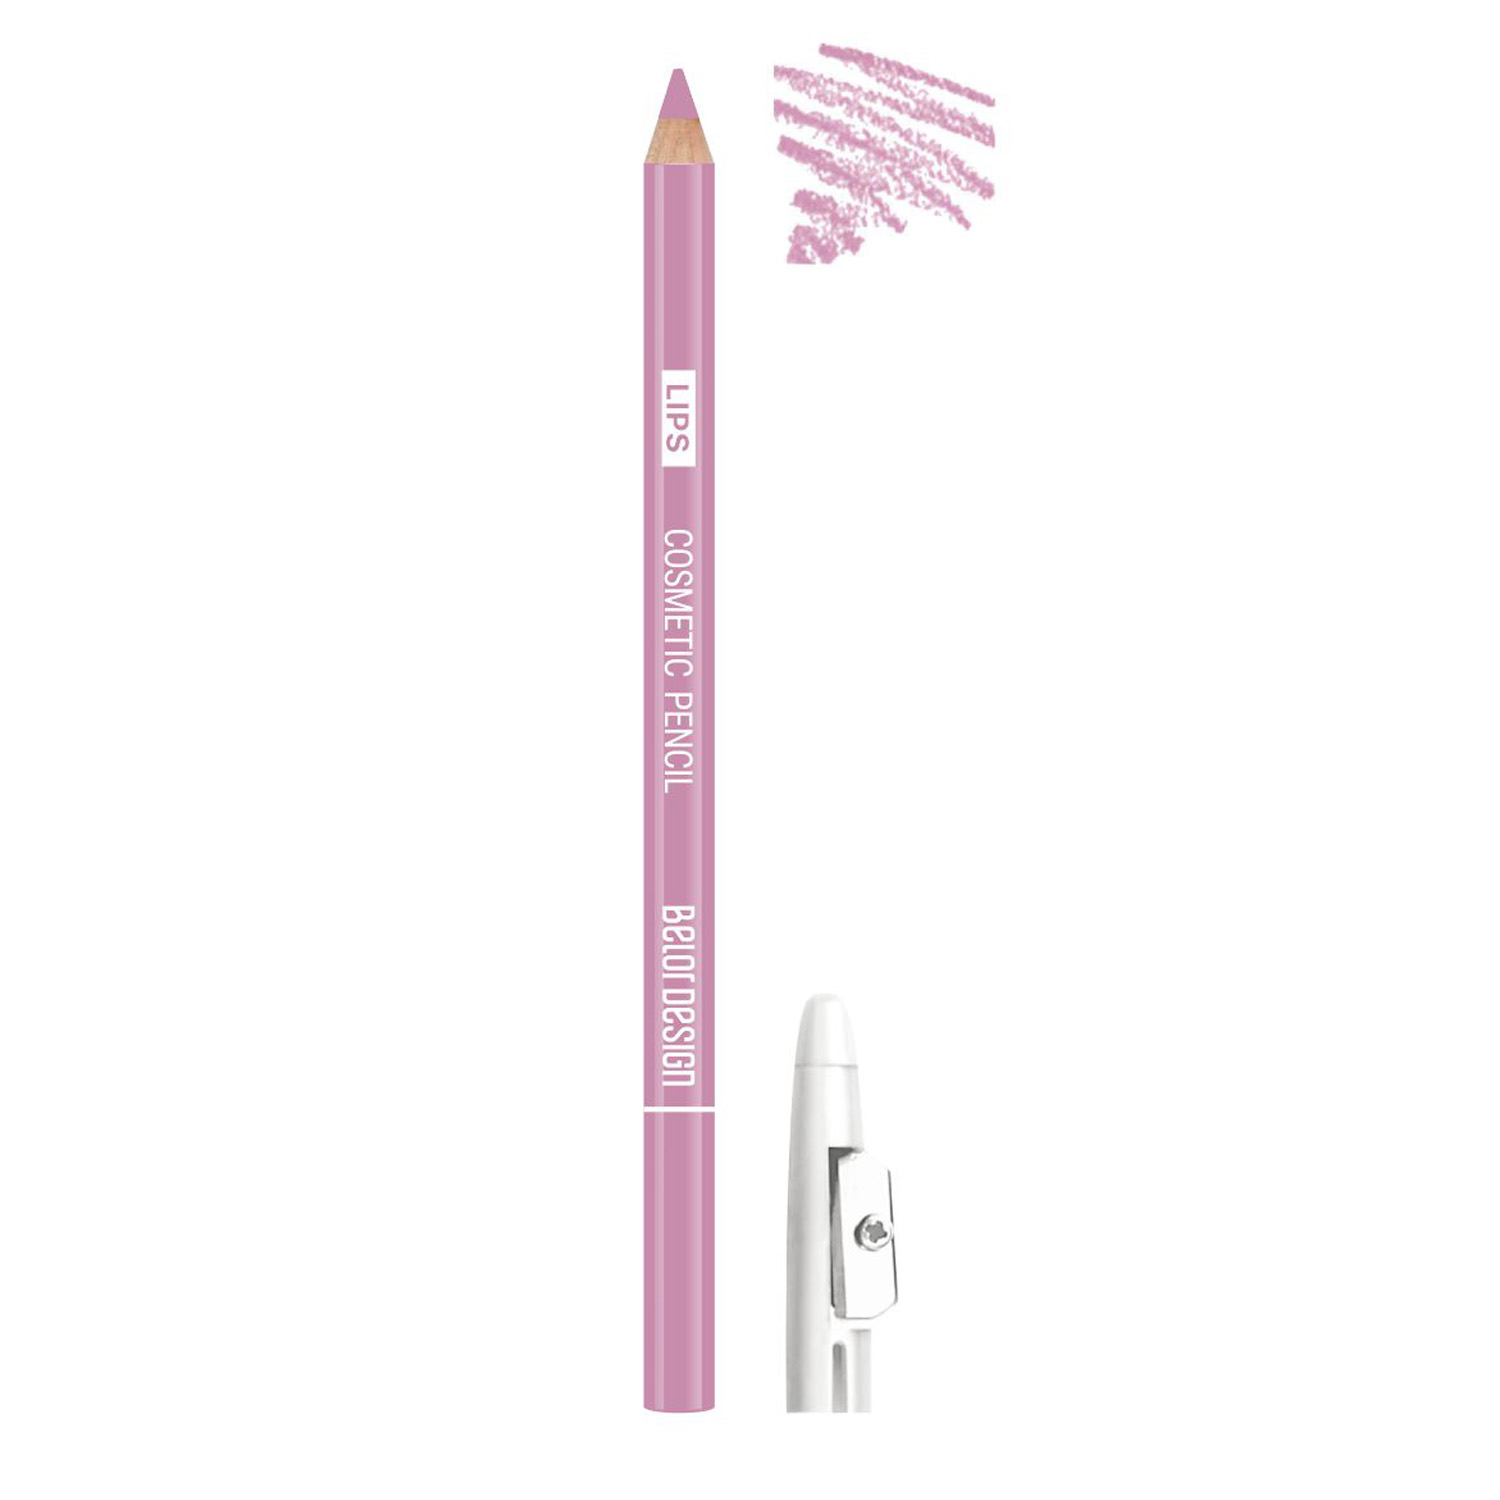 Купить Контурный карандаш для губ Belor Design PARTY, 1.2 гр. (21 розовый нюд), Belordesign